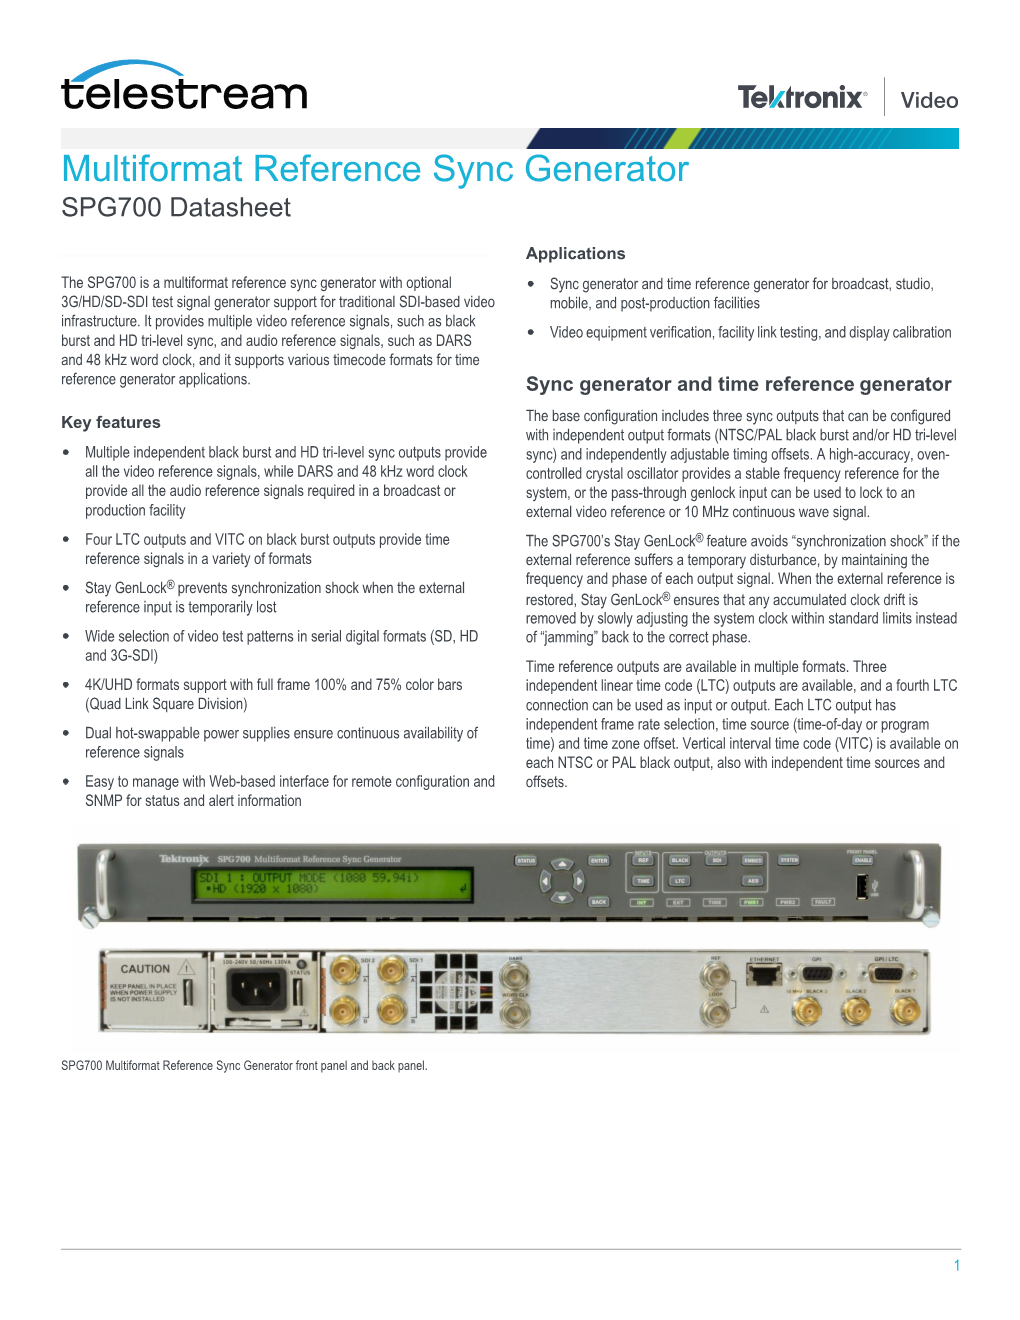 Multiformat Reference Sync Generator SPG700 Datasheet